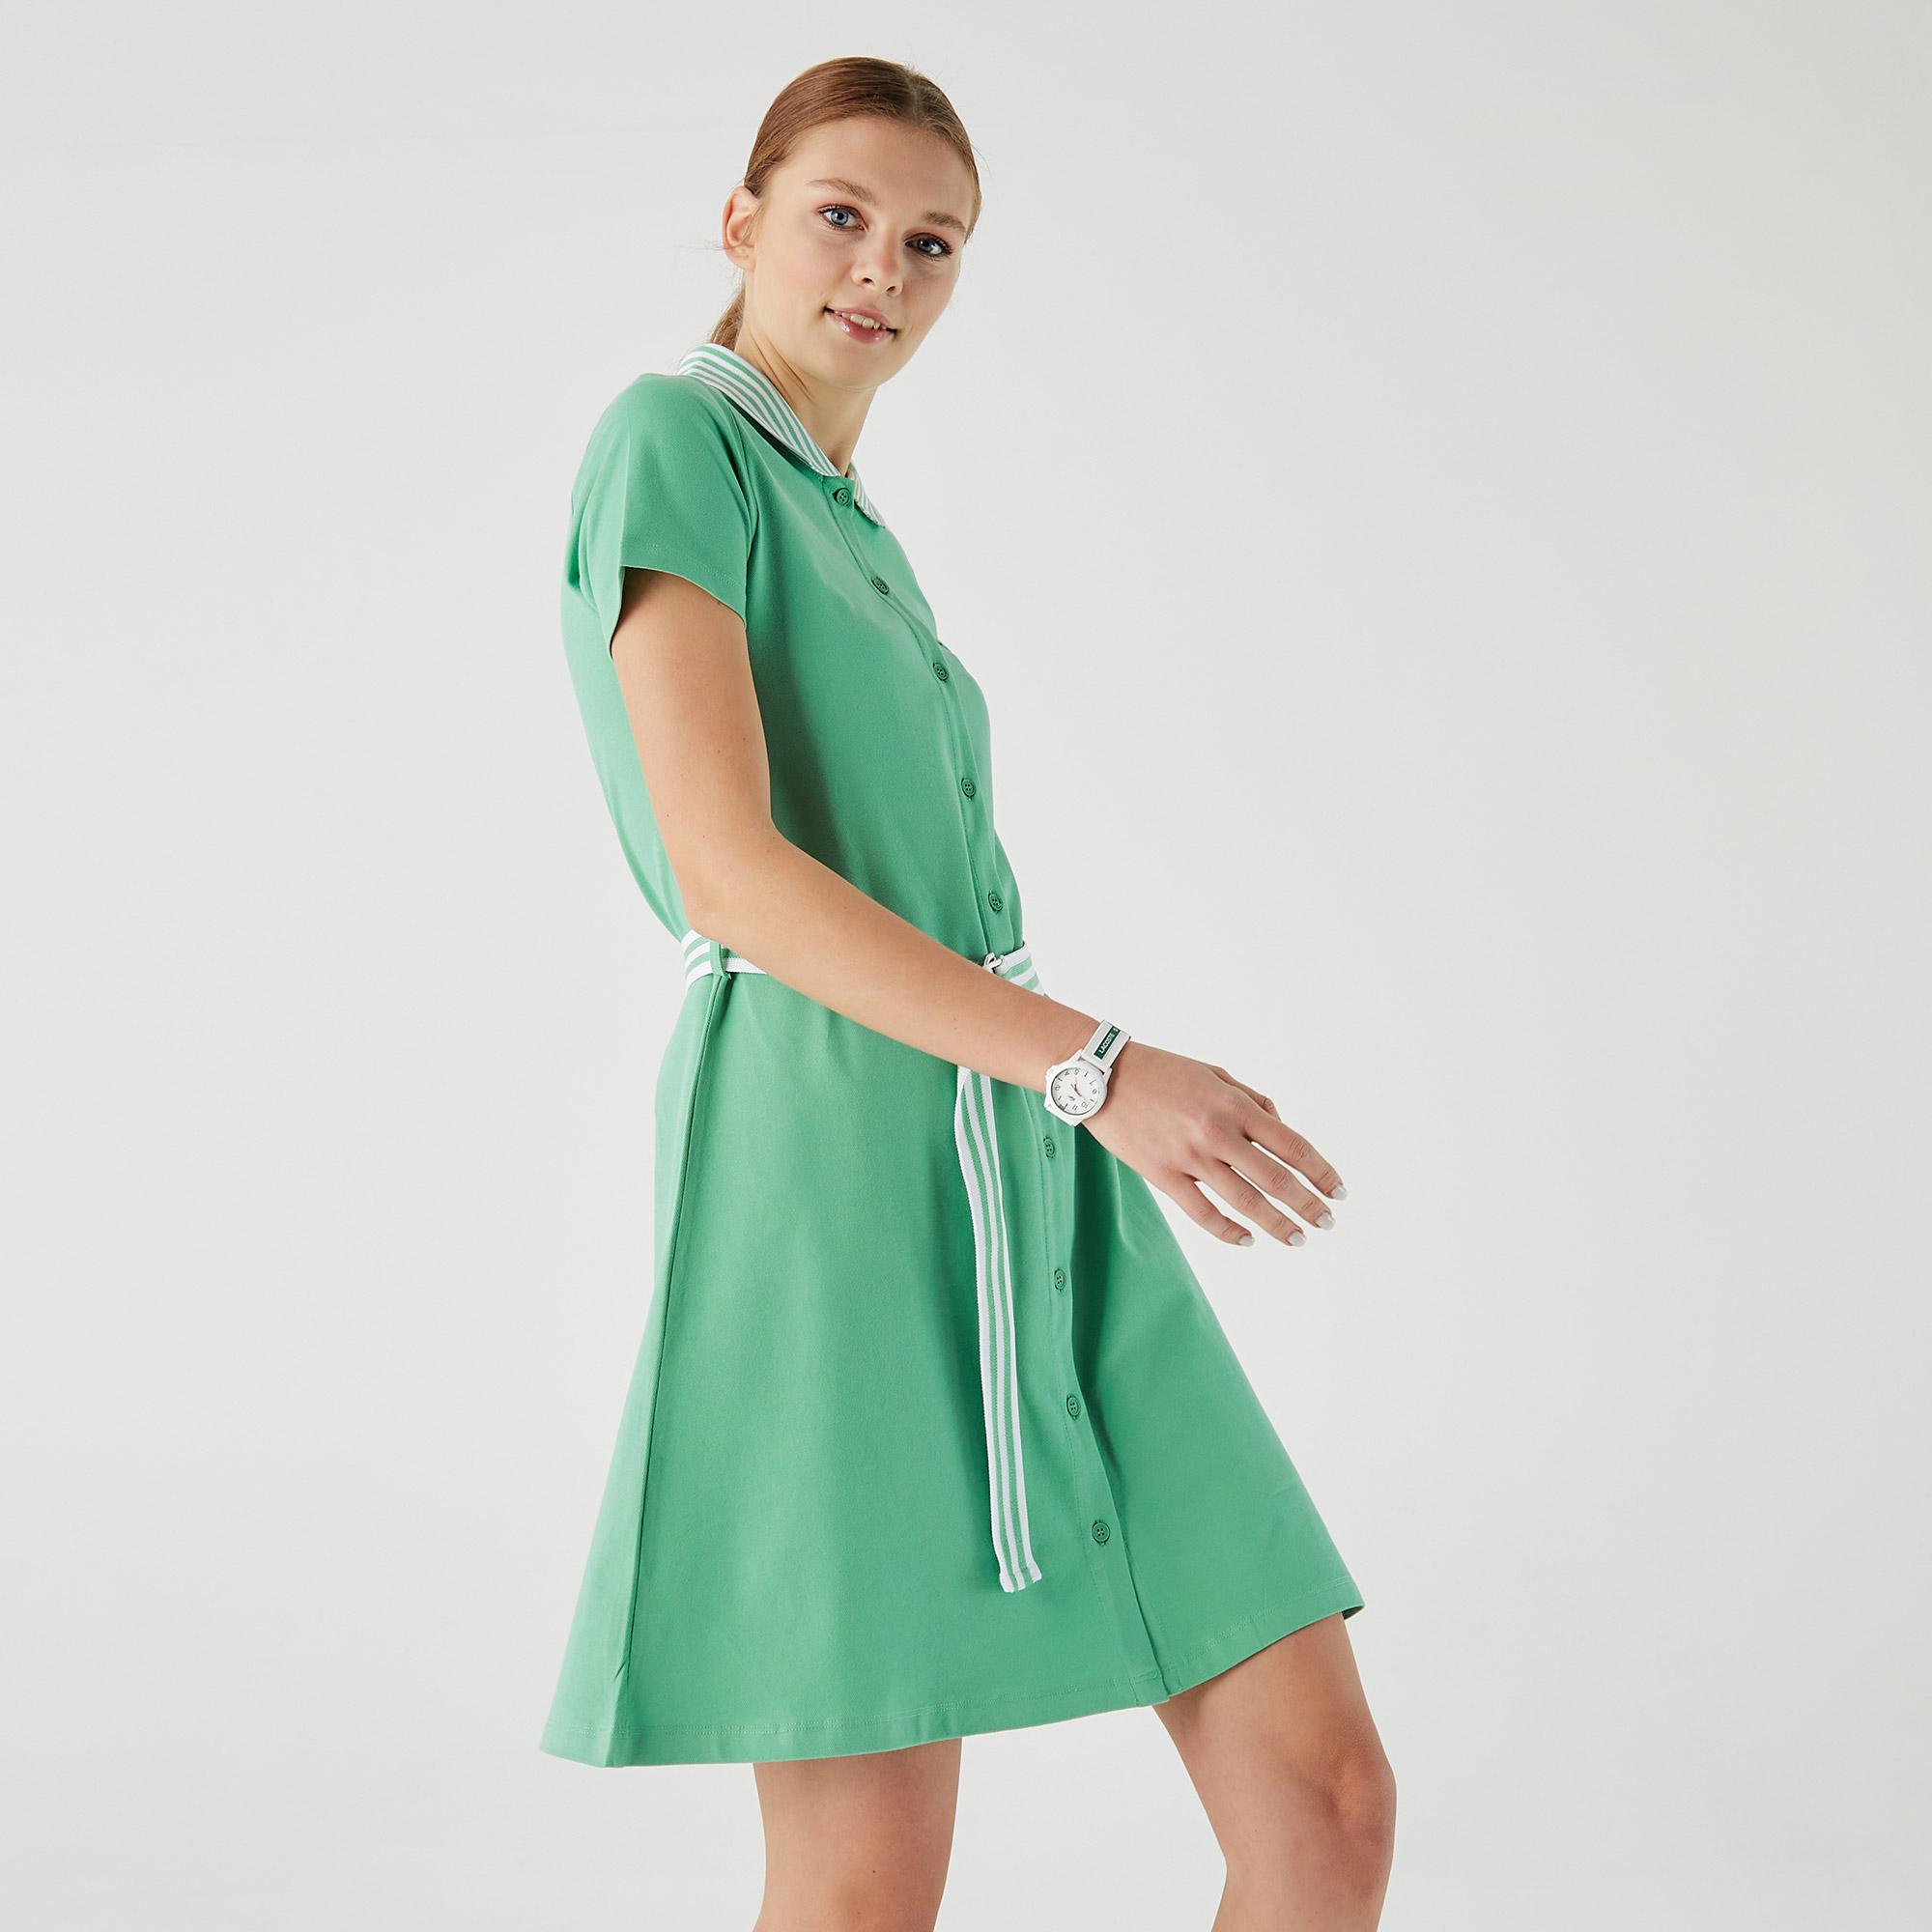 Lacoste Kadın Loose Fit Kısa Kollu Gömlek Yaka Yeşil Elbise. 5